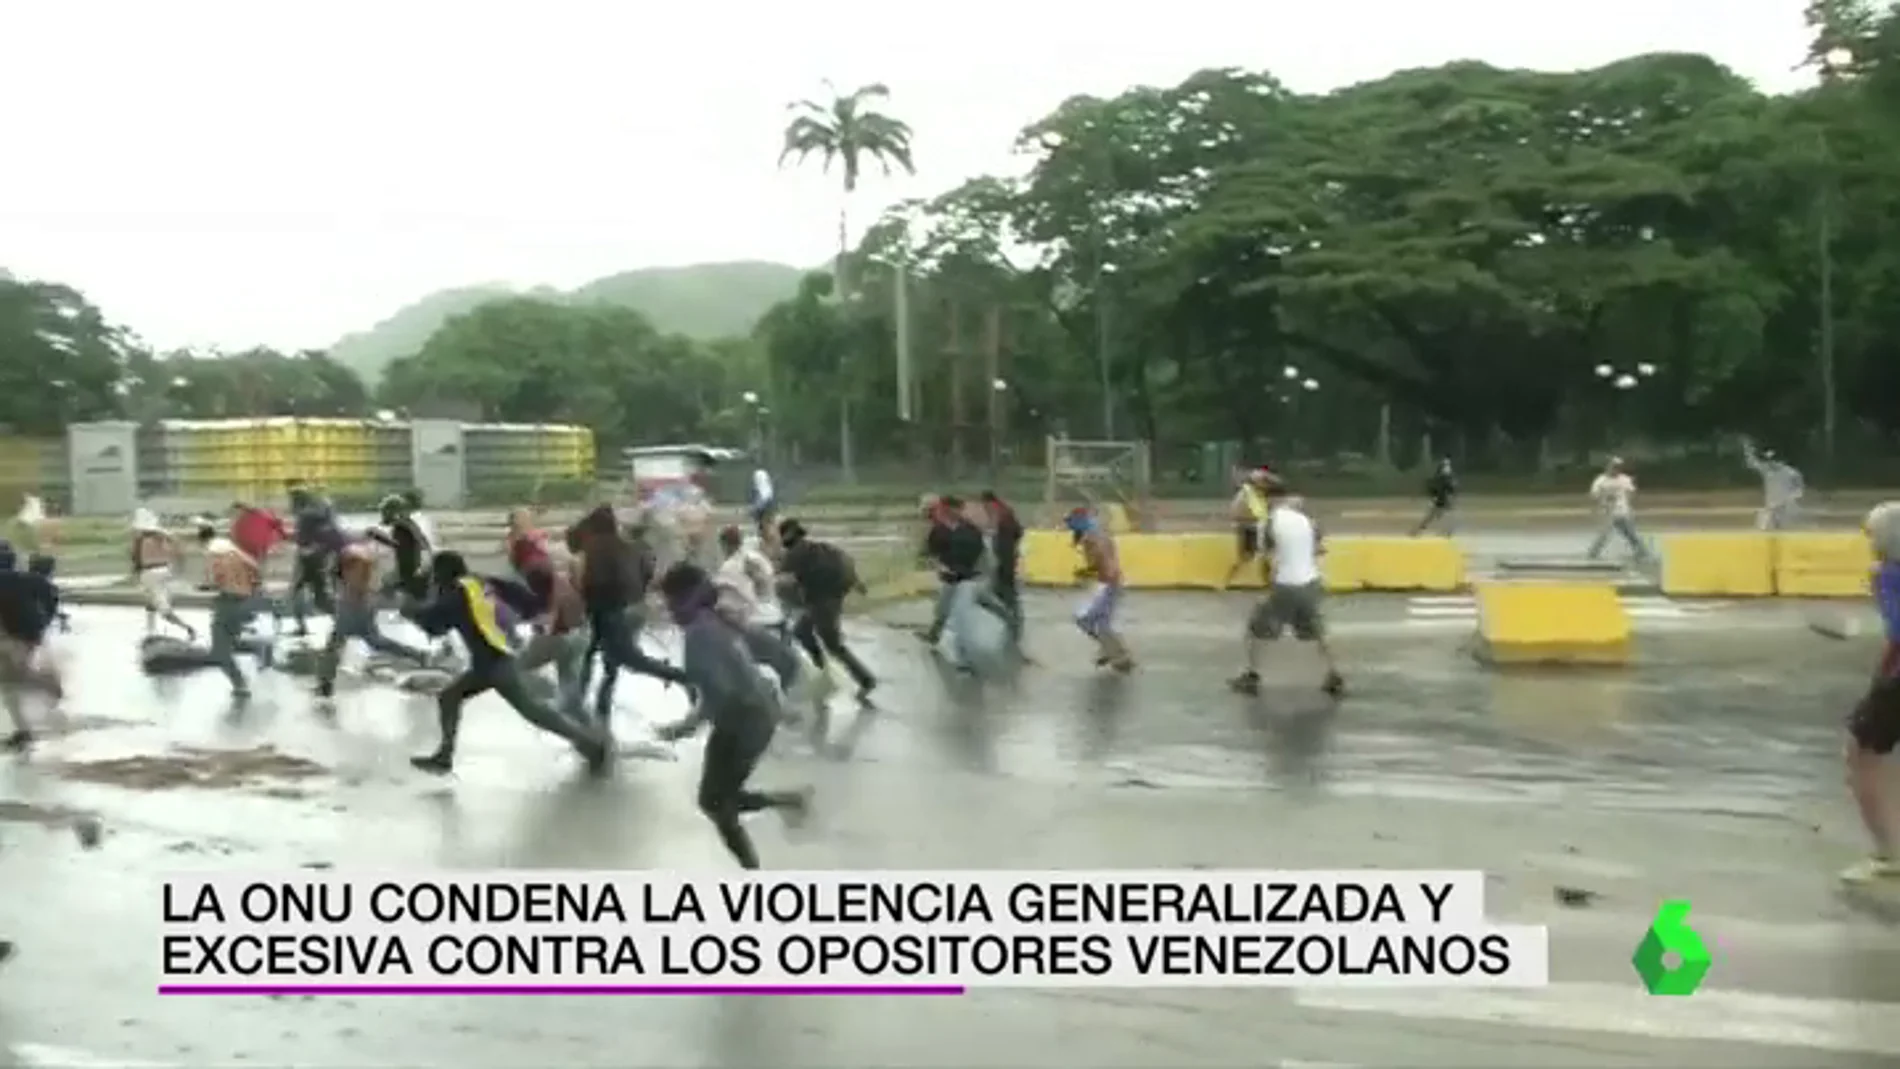 La ONU acusa a fuerzas orden venezolanas de tortura y malos tratos generalizados